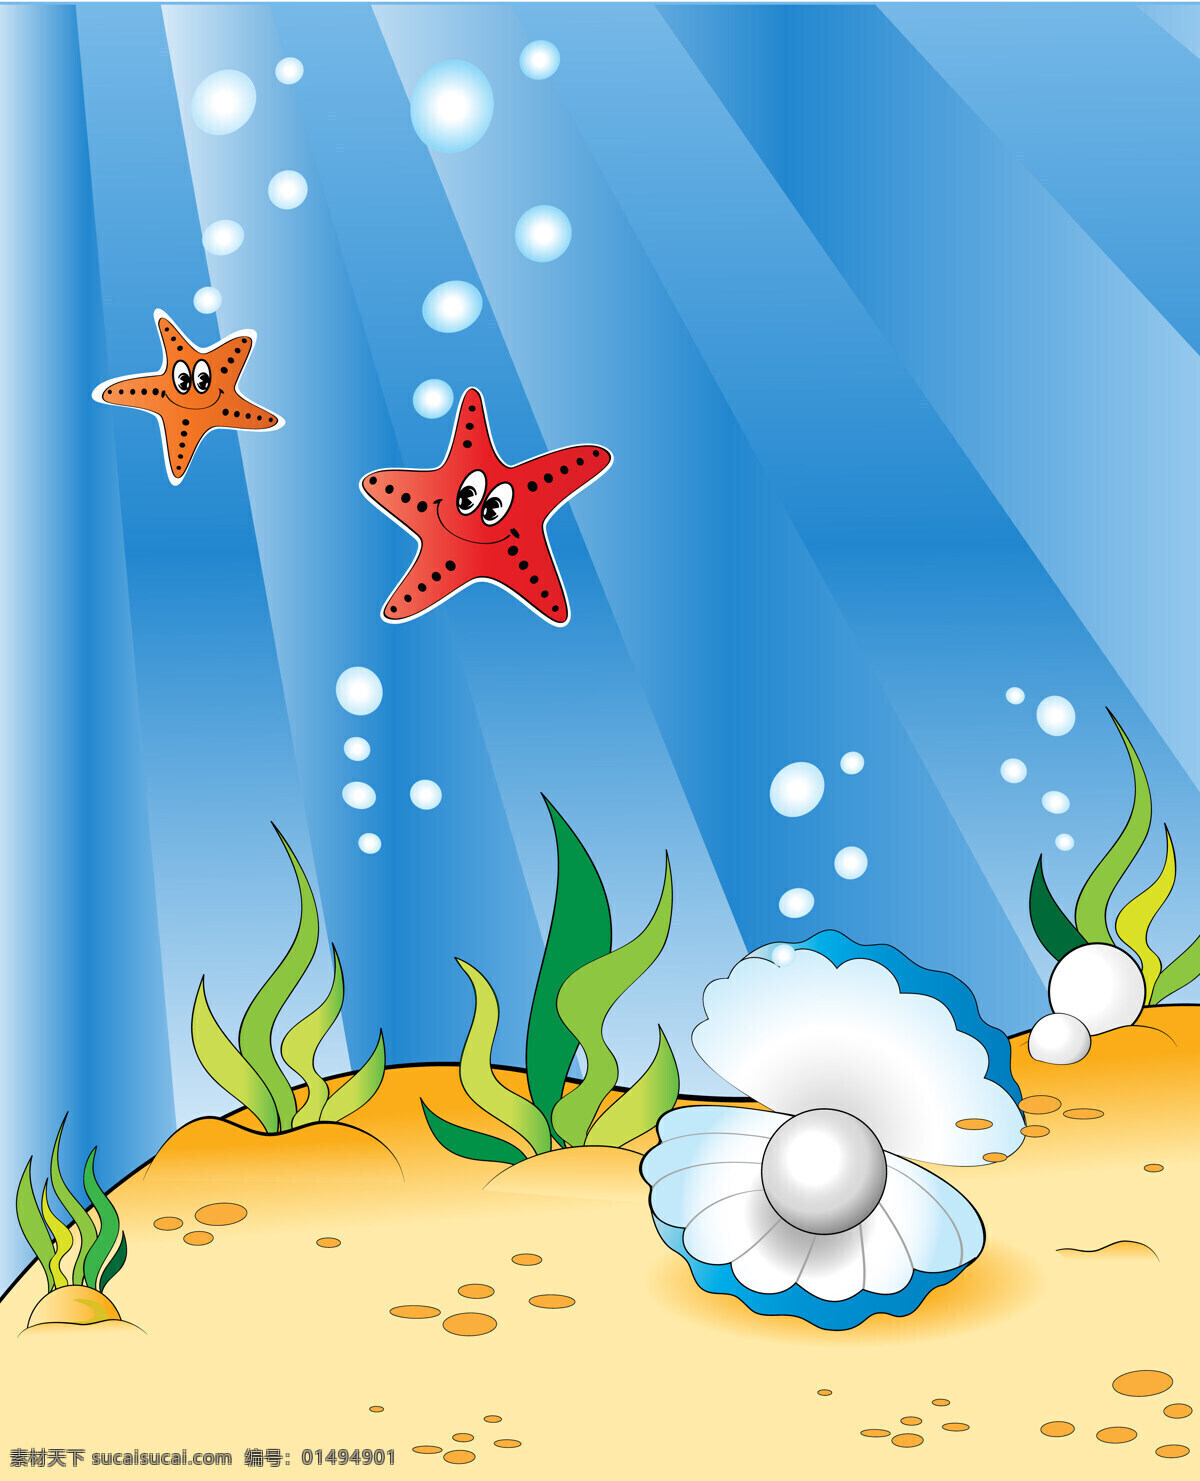 卡通 移门 贝壳 底纹边框 风景 海底世界 海藻 卡通移门 阳光 设计图库 移门图案 家居装饰素材